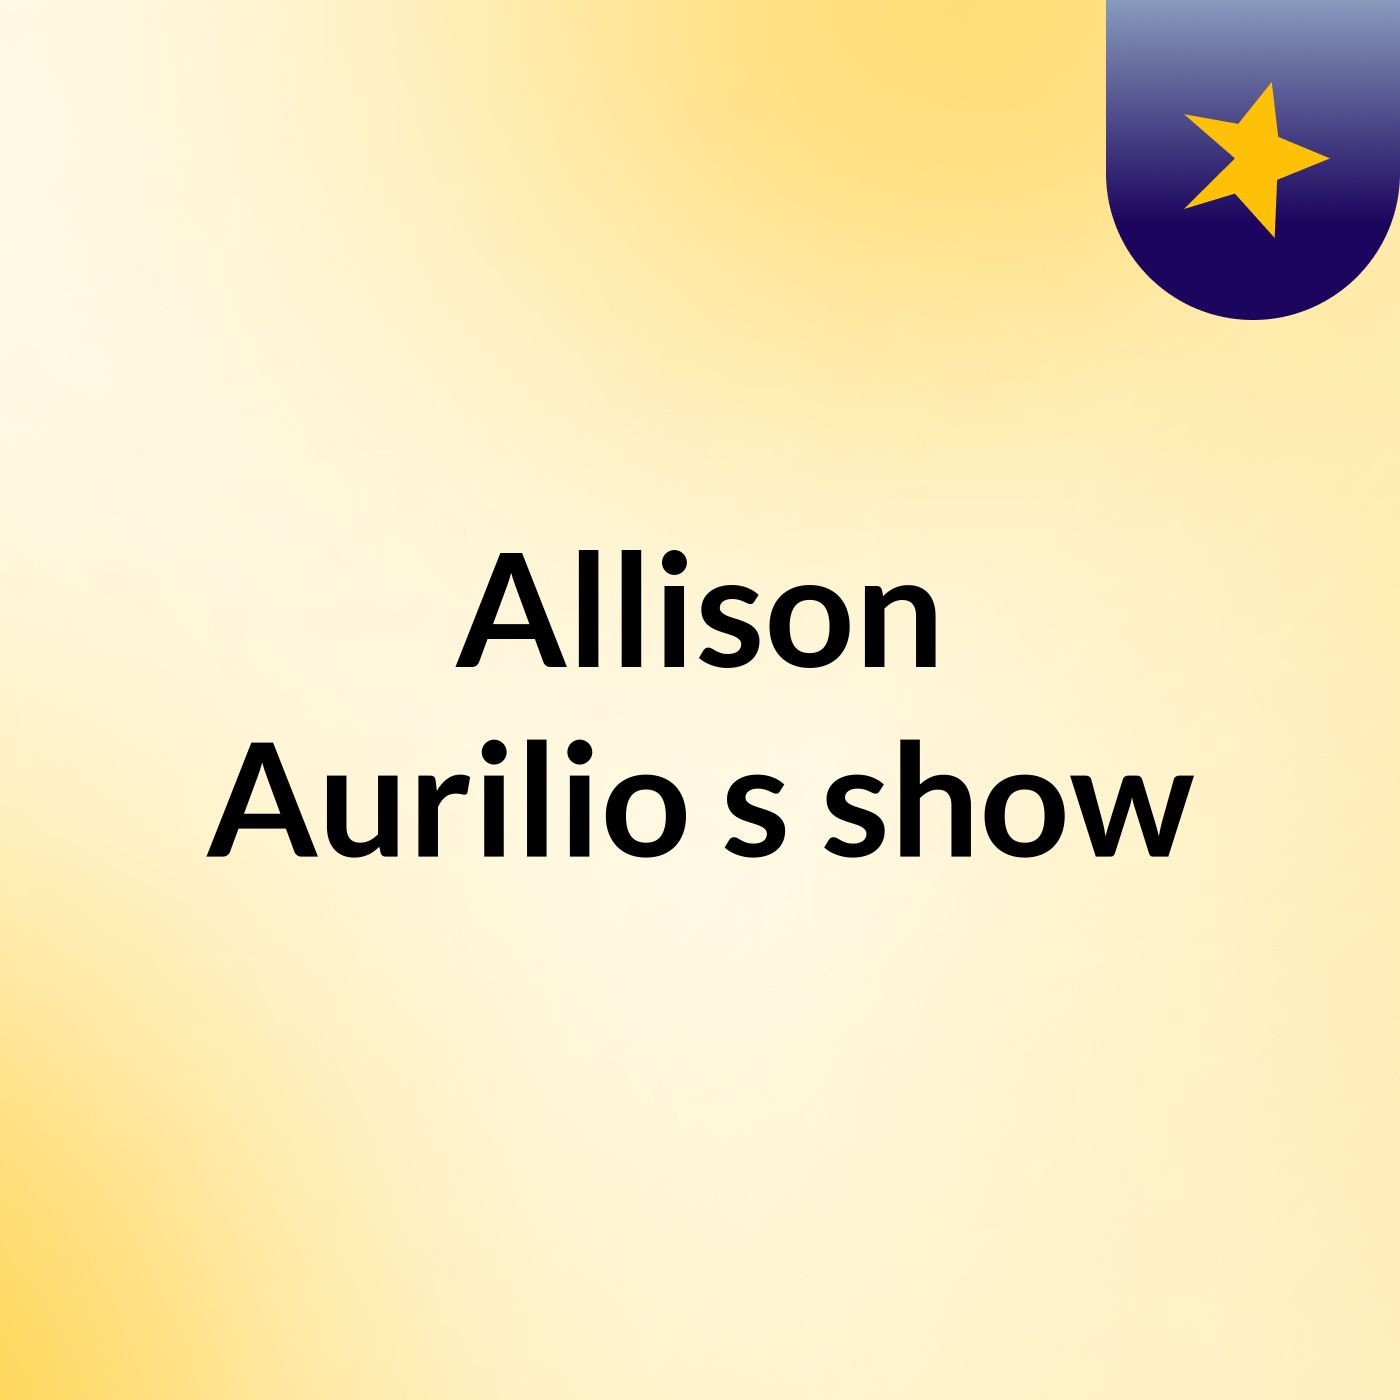 Allison Aurilio's show